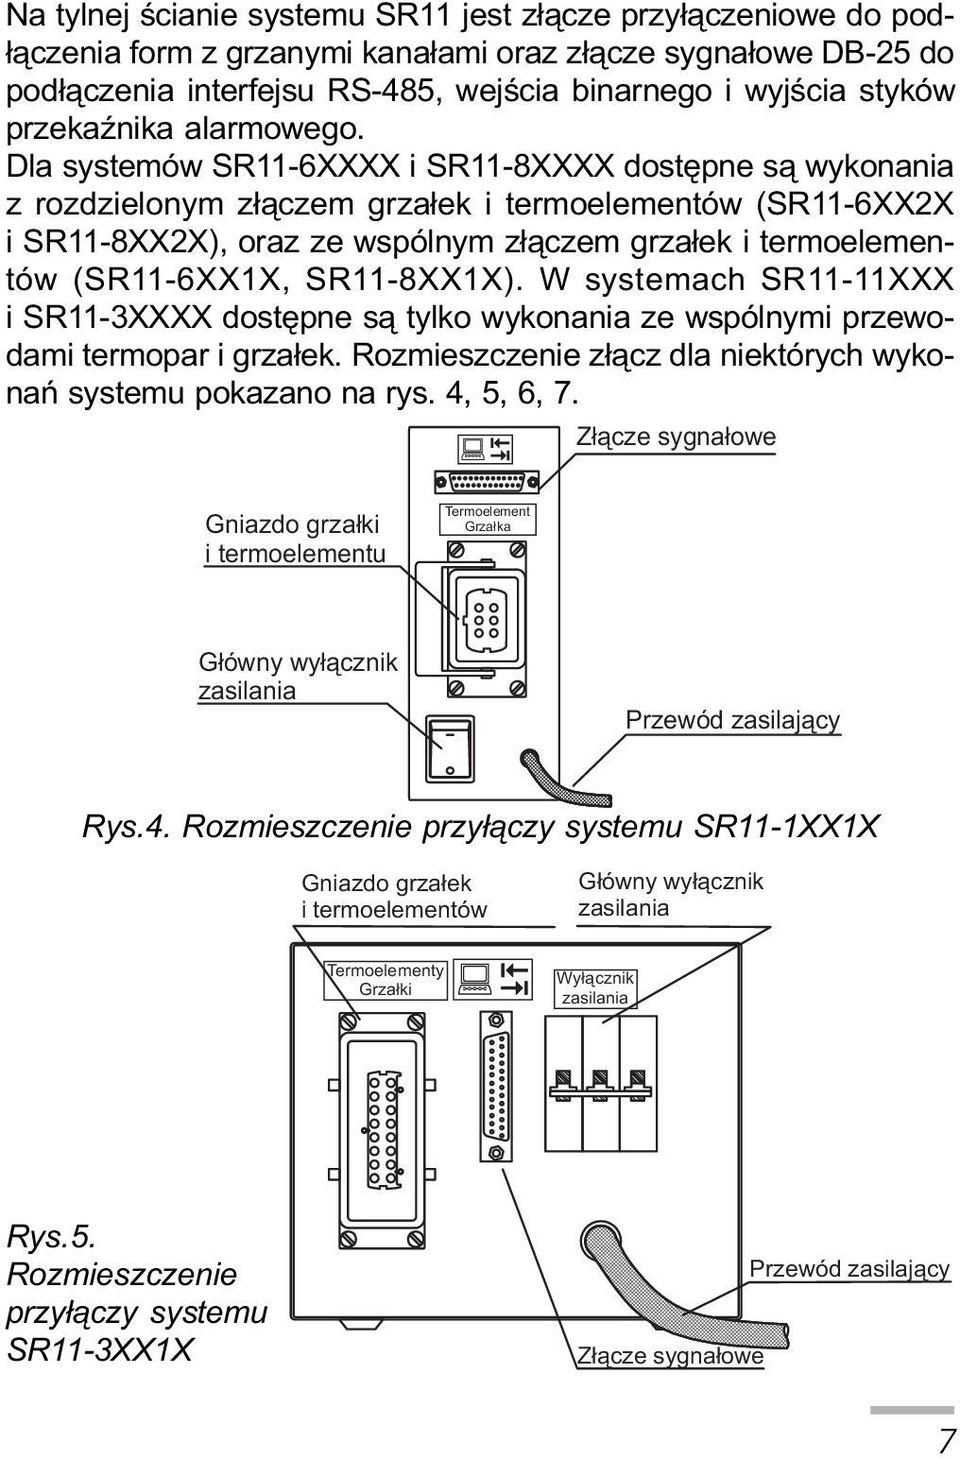 W systemach RXXX i RXXXX dostêpne s¹ tylko wykonania ze wspólnymi przewodami termopar i grza³ek. Rozmieszczenie z³¹cz dla niektórych wykonañ systemu pokazano na rys.,,,.